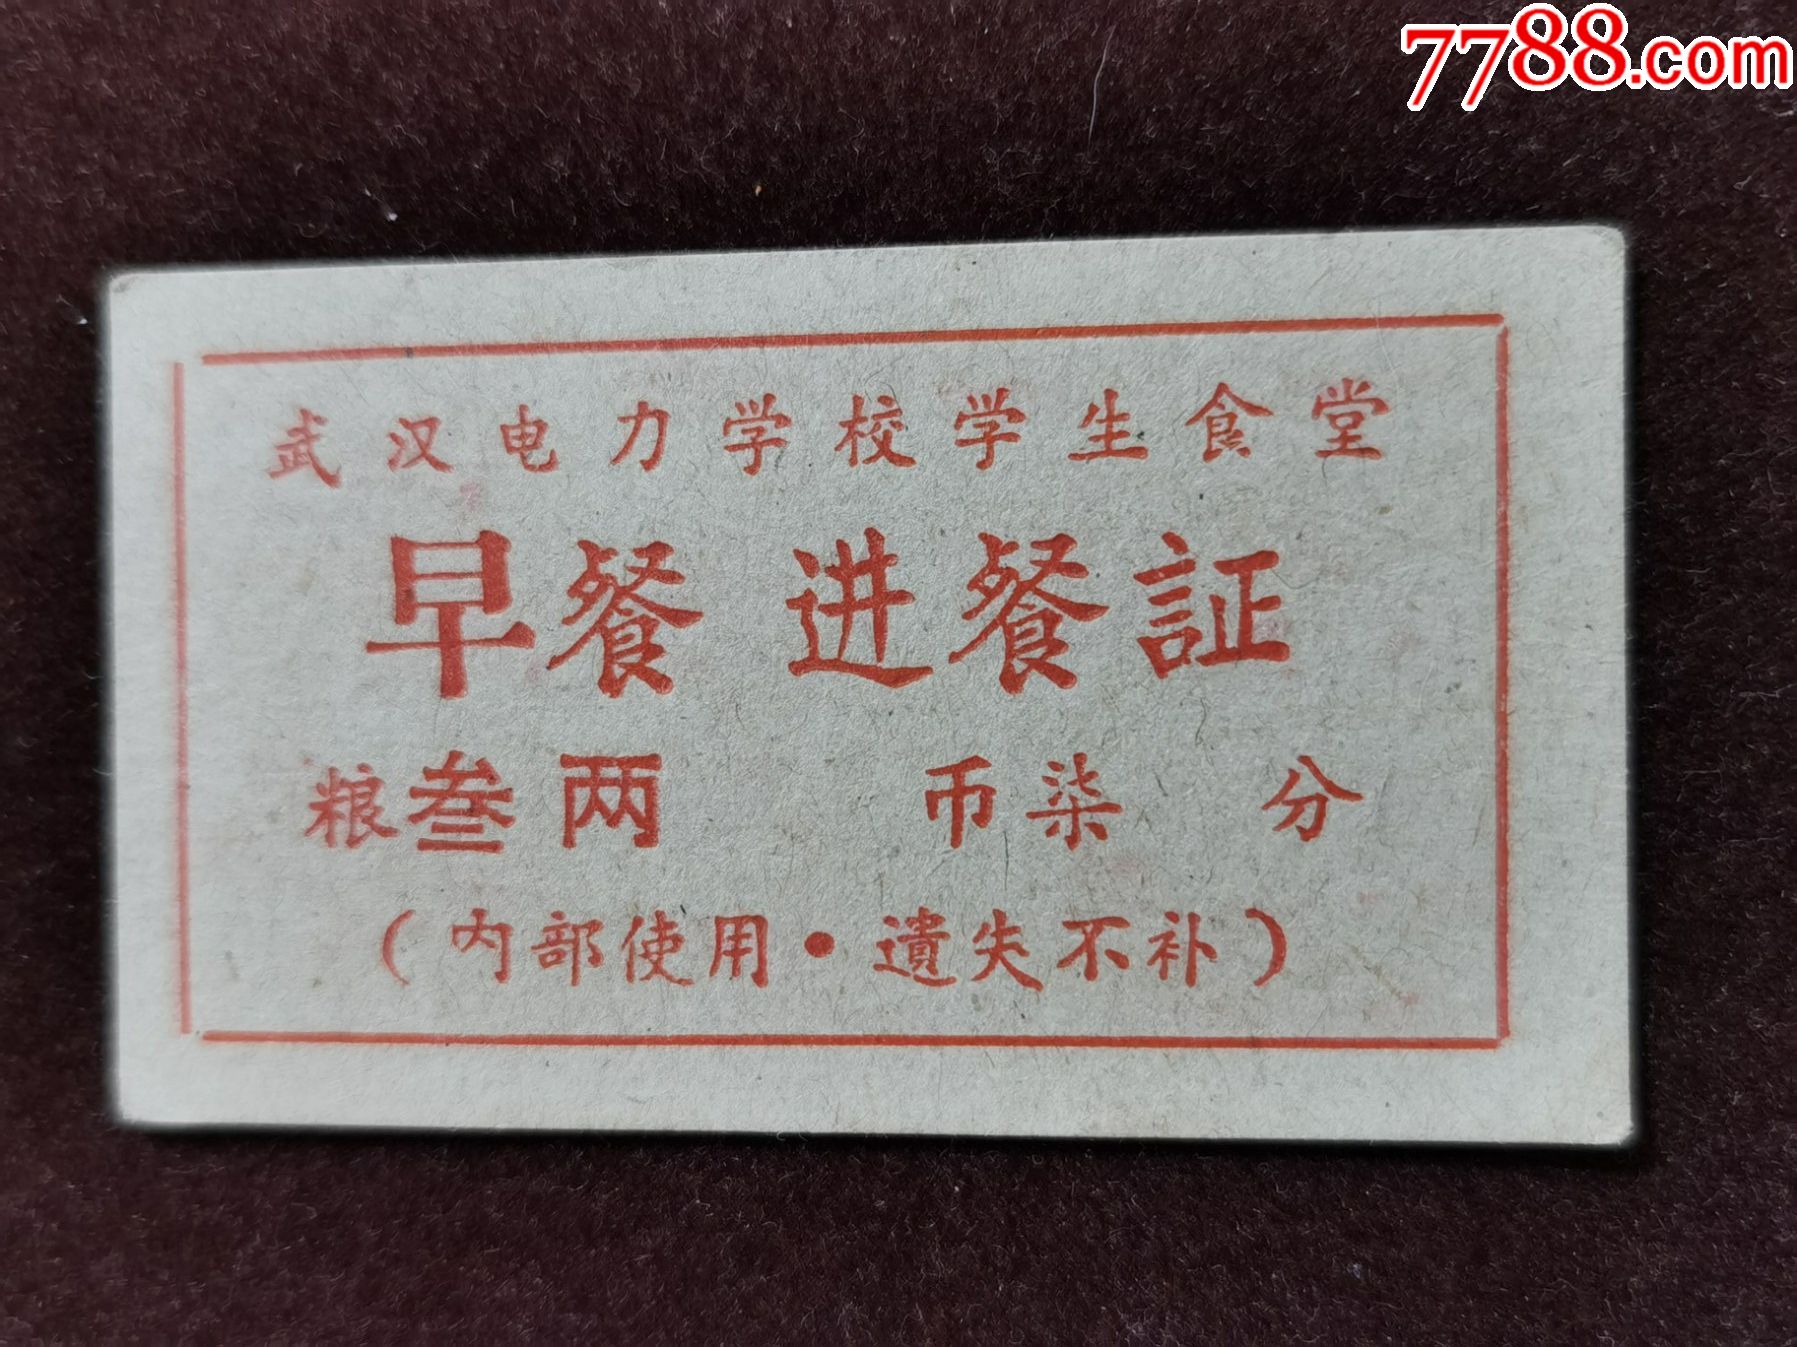 生活票证(餐票)武汉电力学校学生食堂